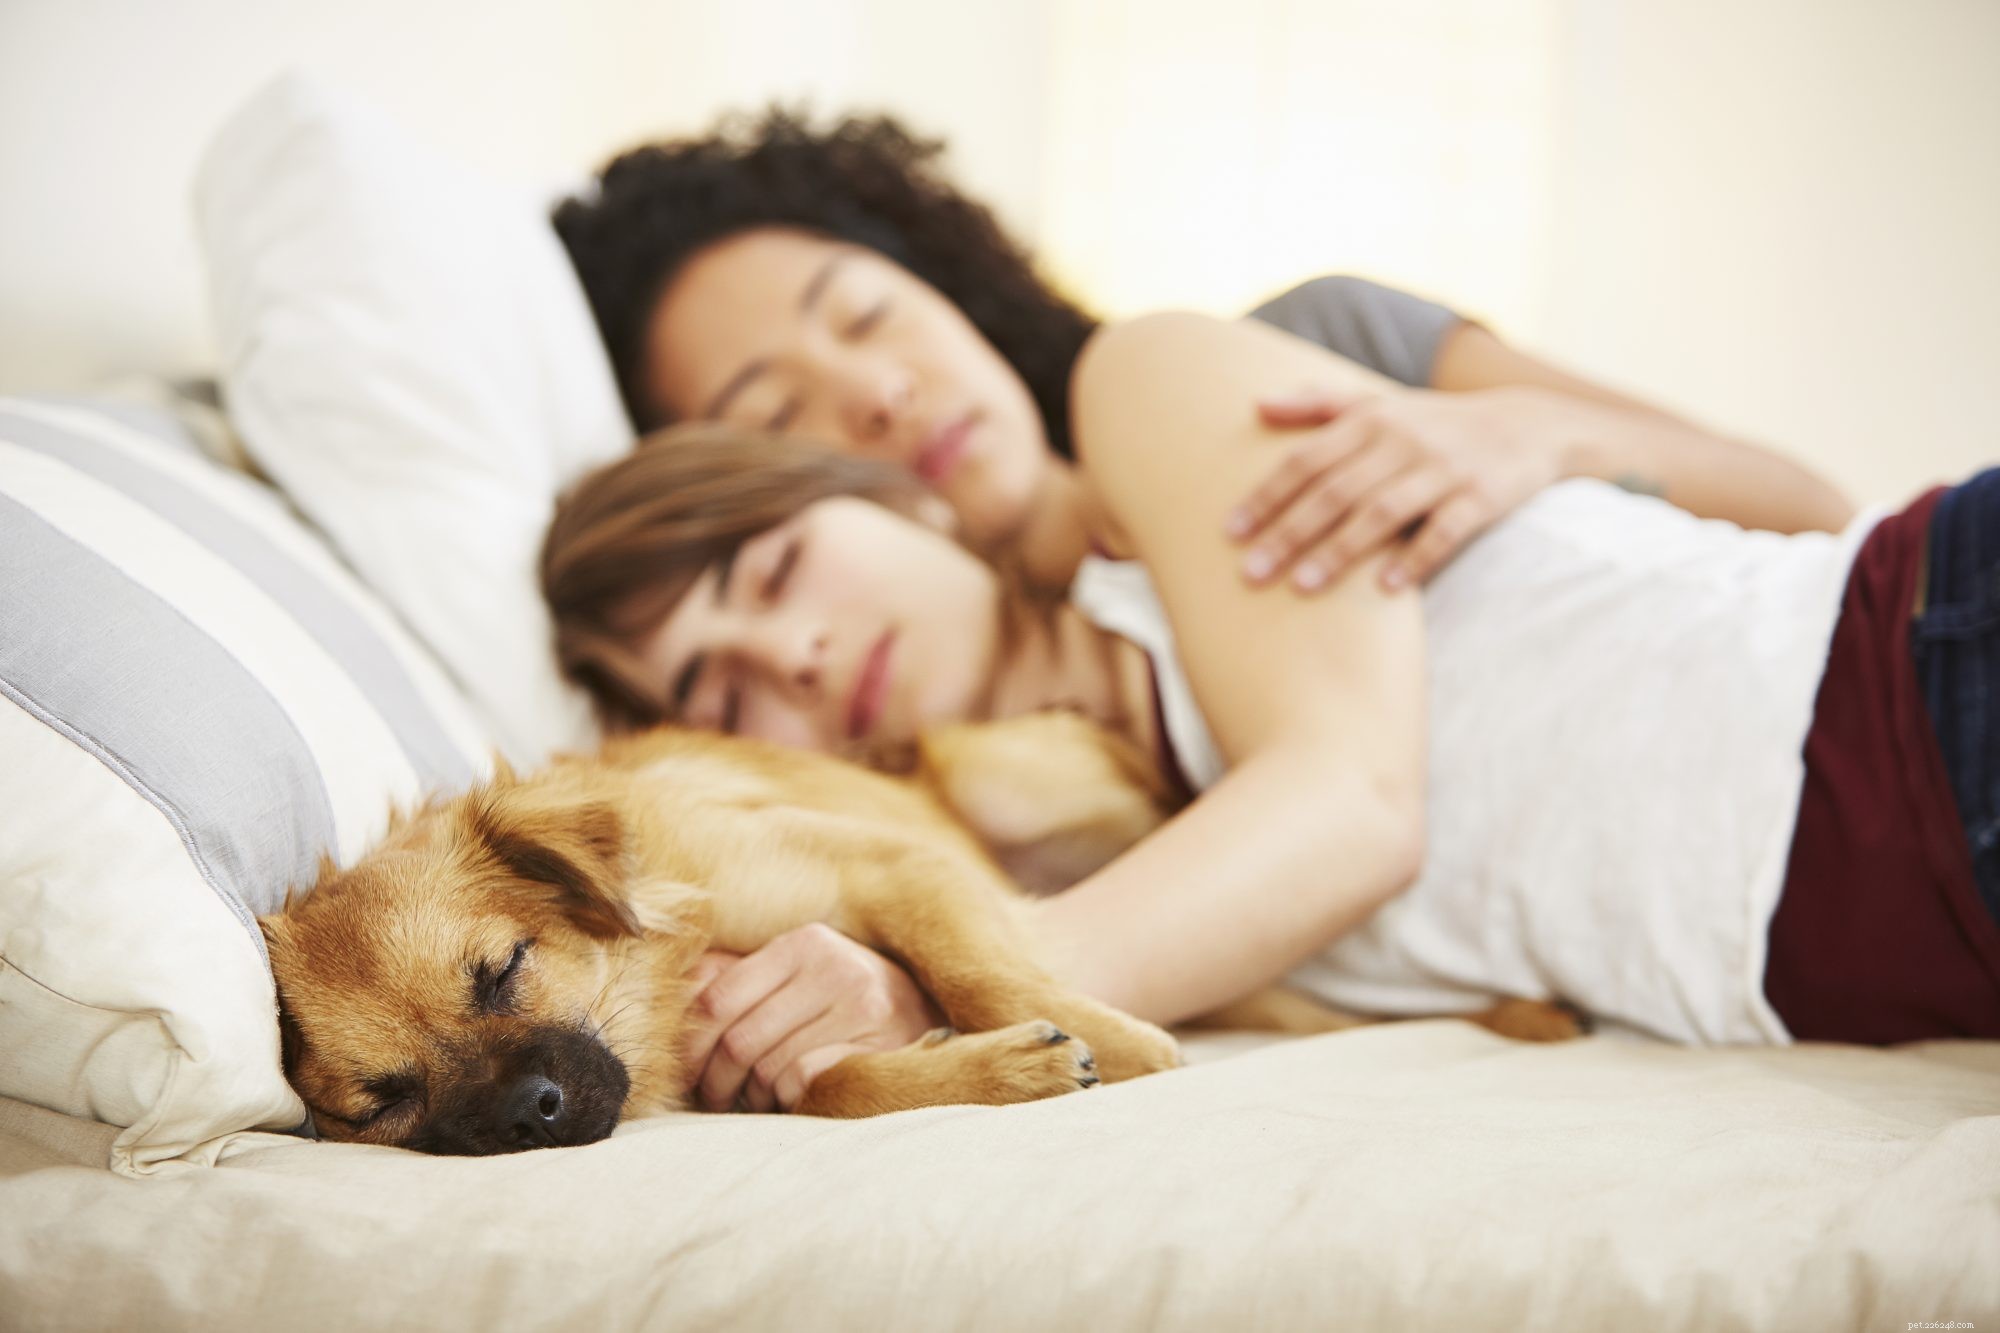 Vous et votre animal bénéficiez tous les deux du fait de dormir ensemble dans un lit